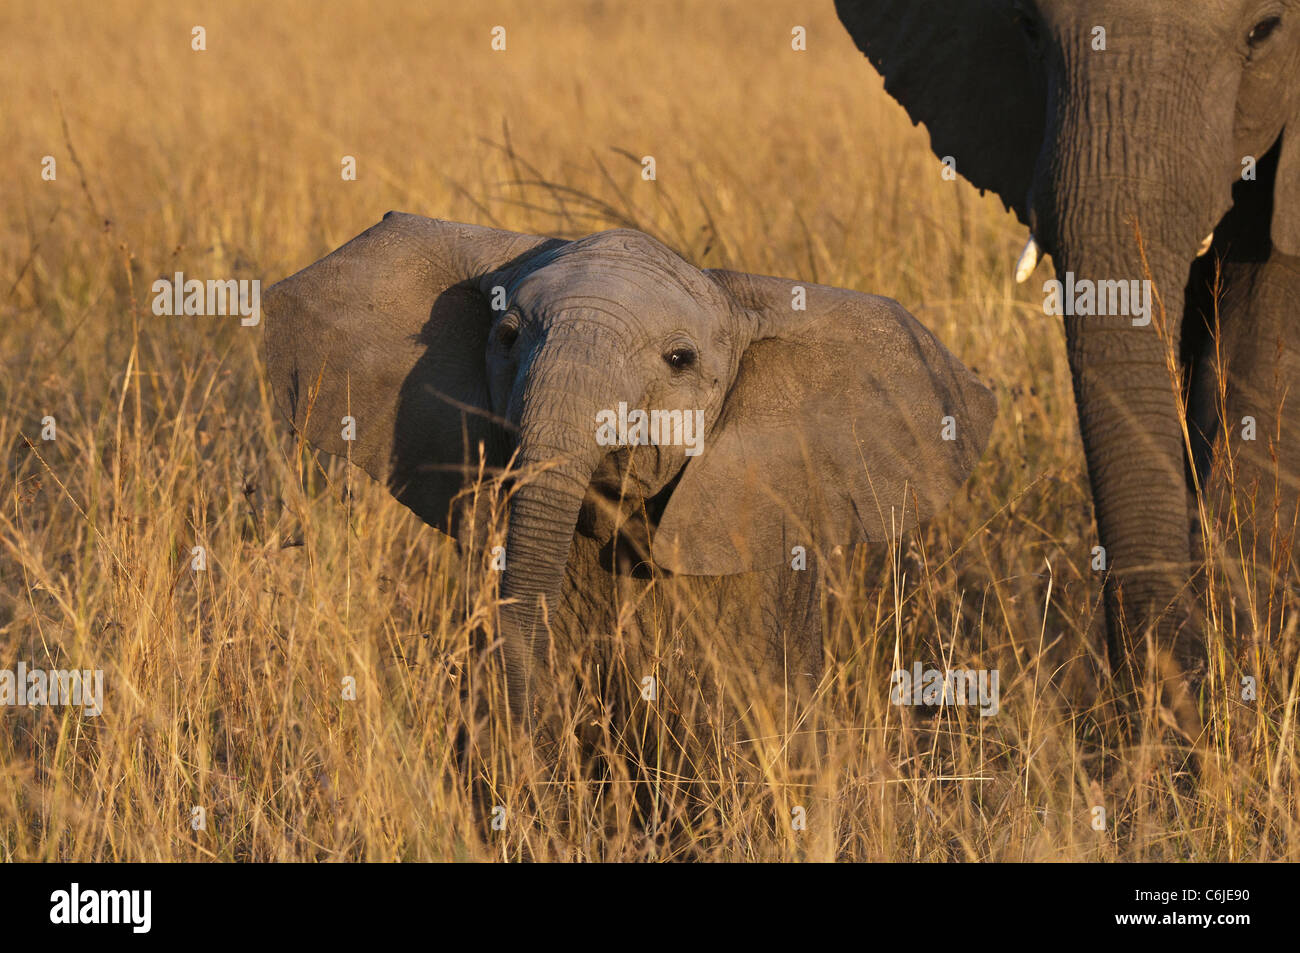 Un giovane africano vitello di elefante africano (Loxodonta africana) solleva la sua testa e spinge il suo tronco in una postura di minaccia Foto Stock